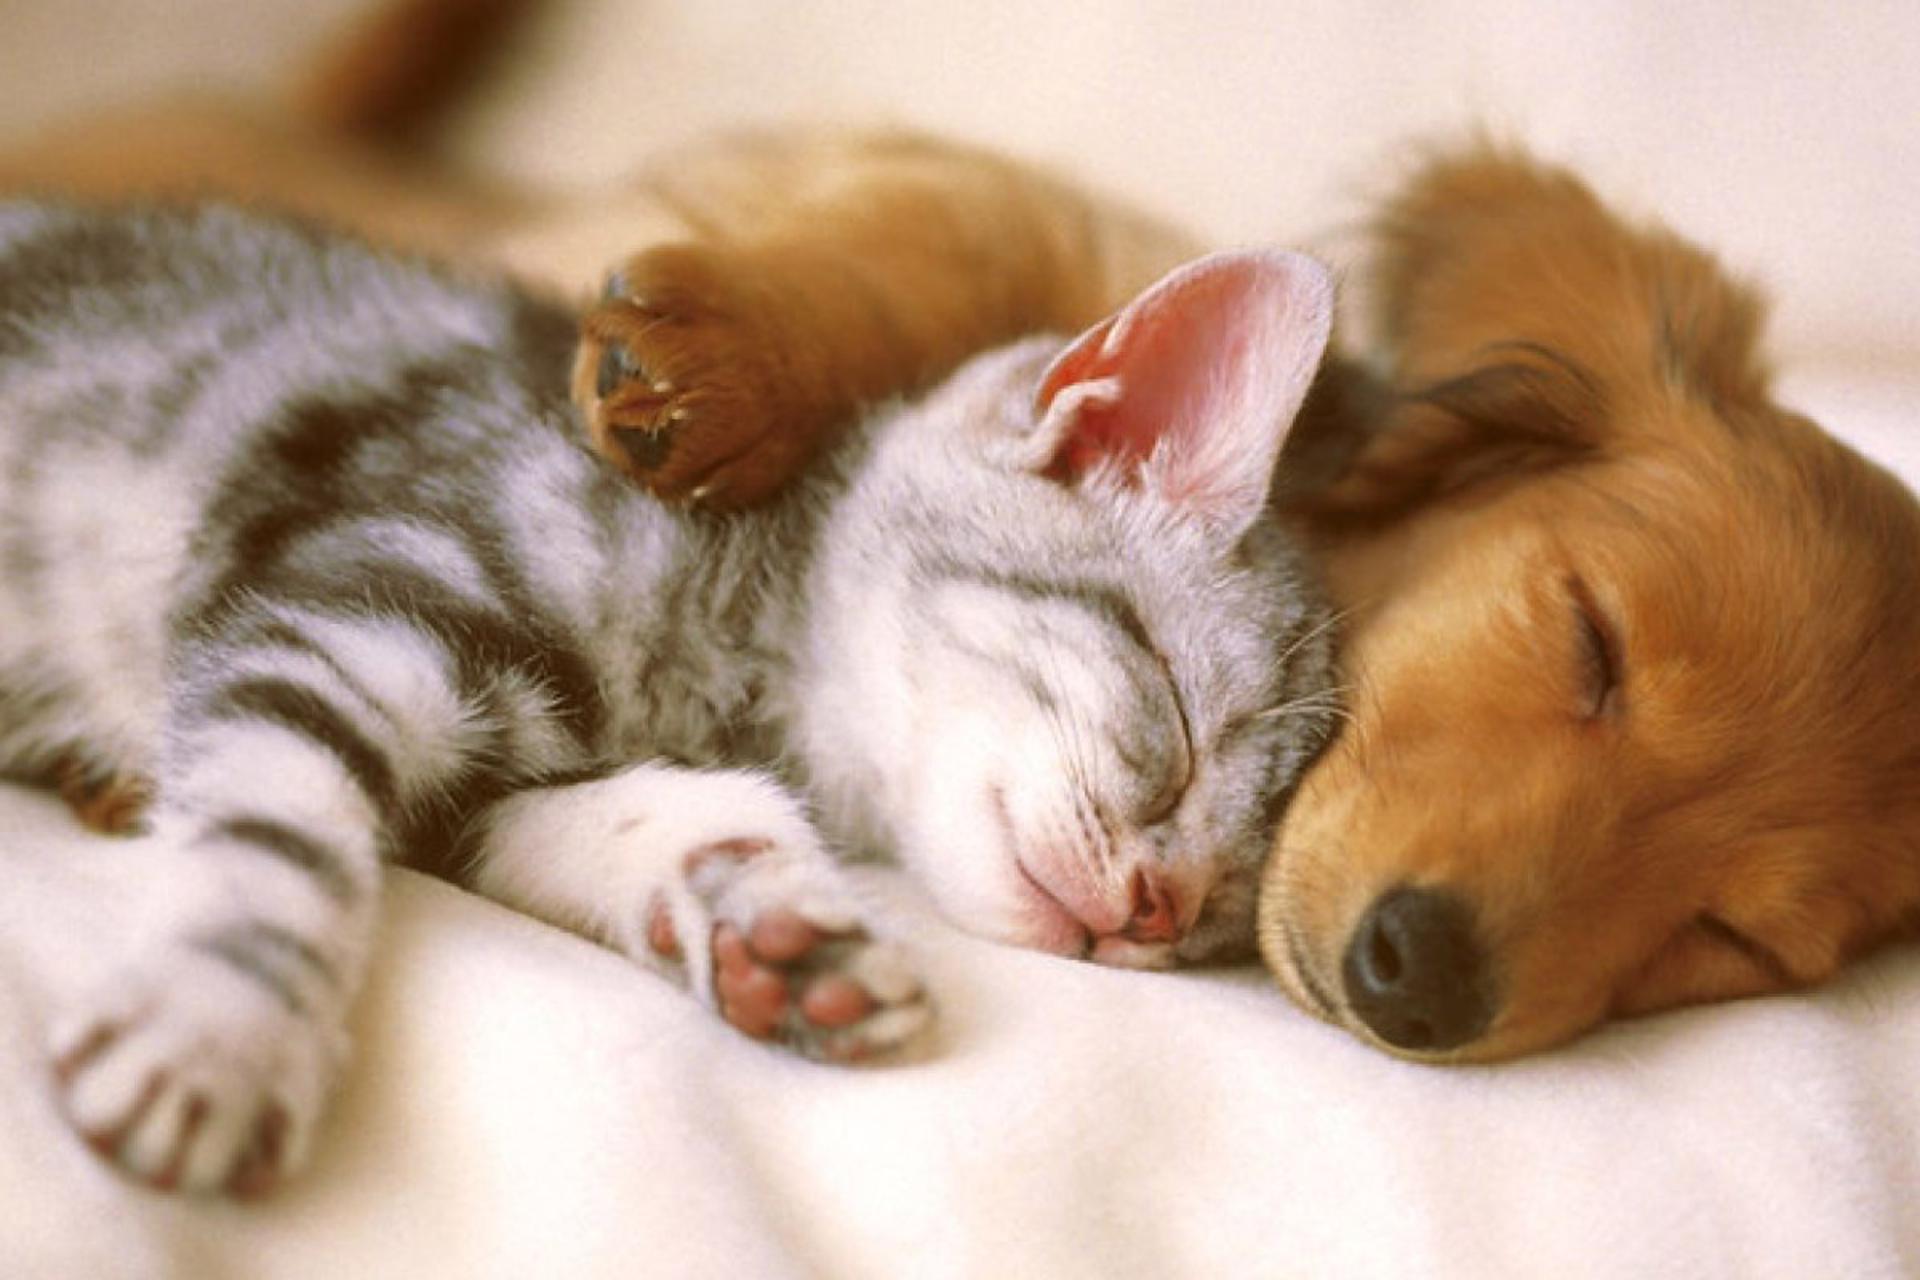 مرجع متخصصين ايران گربه و سگ در حال خواب كنار يكديگر